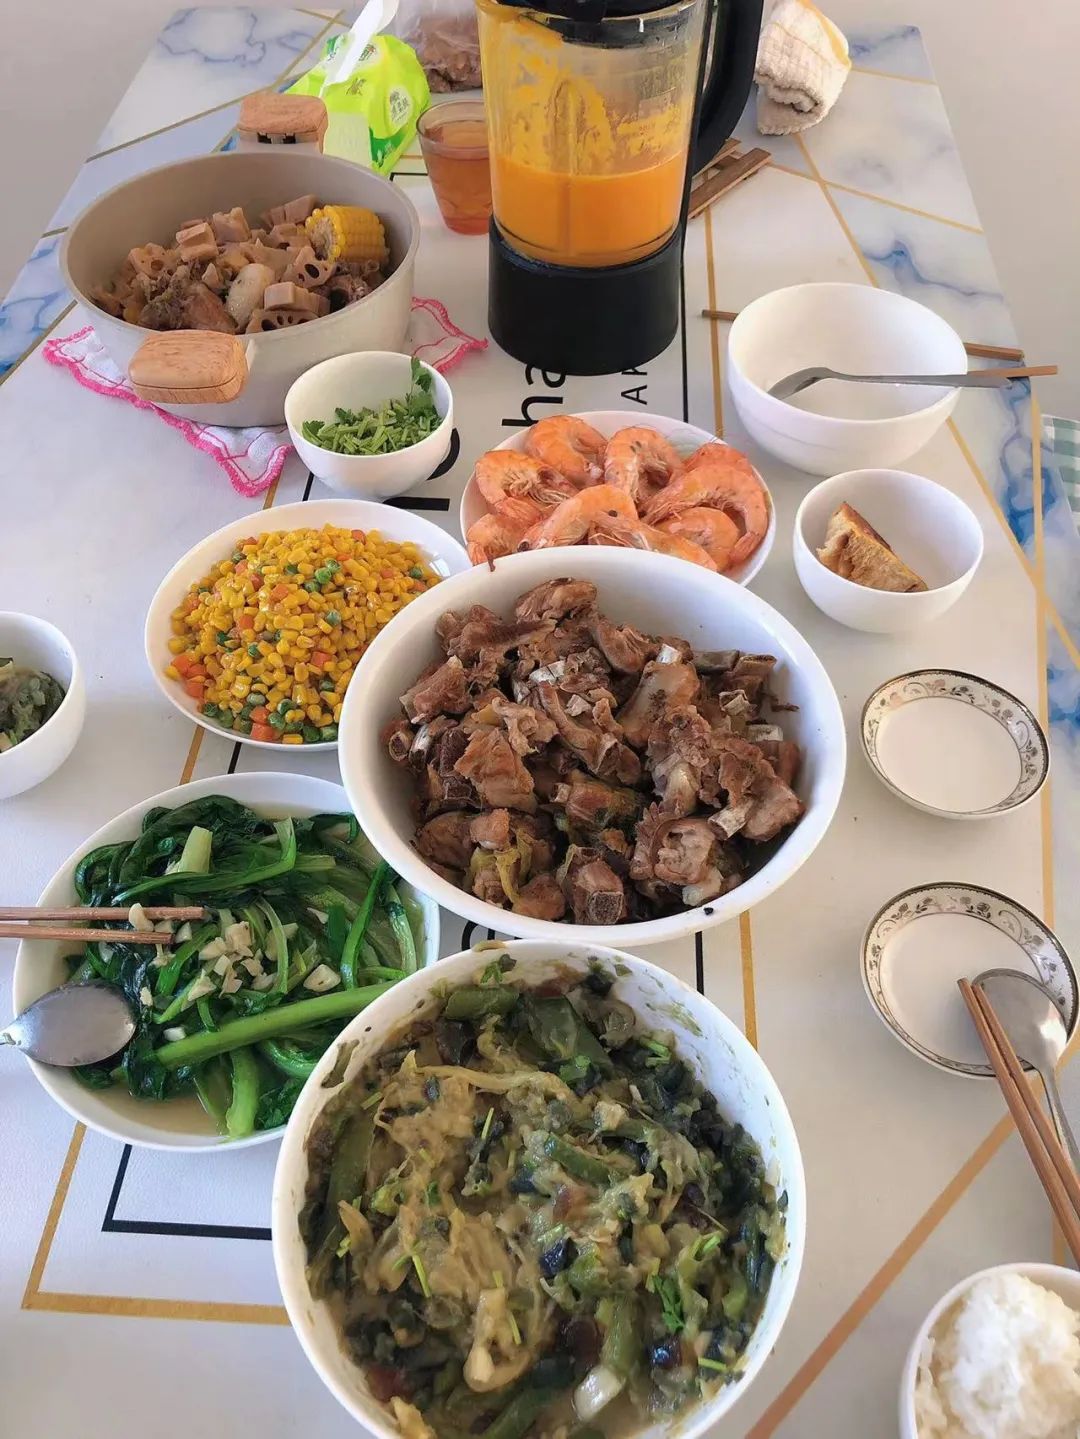 王乐怡在去年春节吃的饭菜。今年，她一个人的年夜饭是自制的韭菜盒子、鱼和烤紫薯。 / 受访者供图